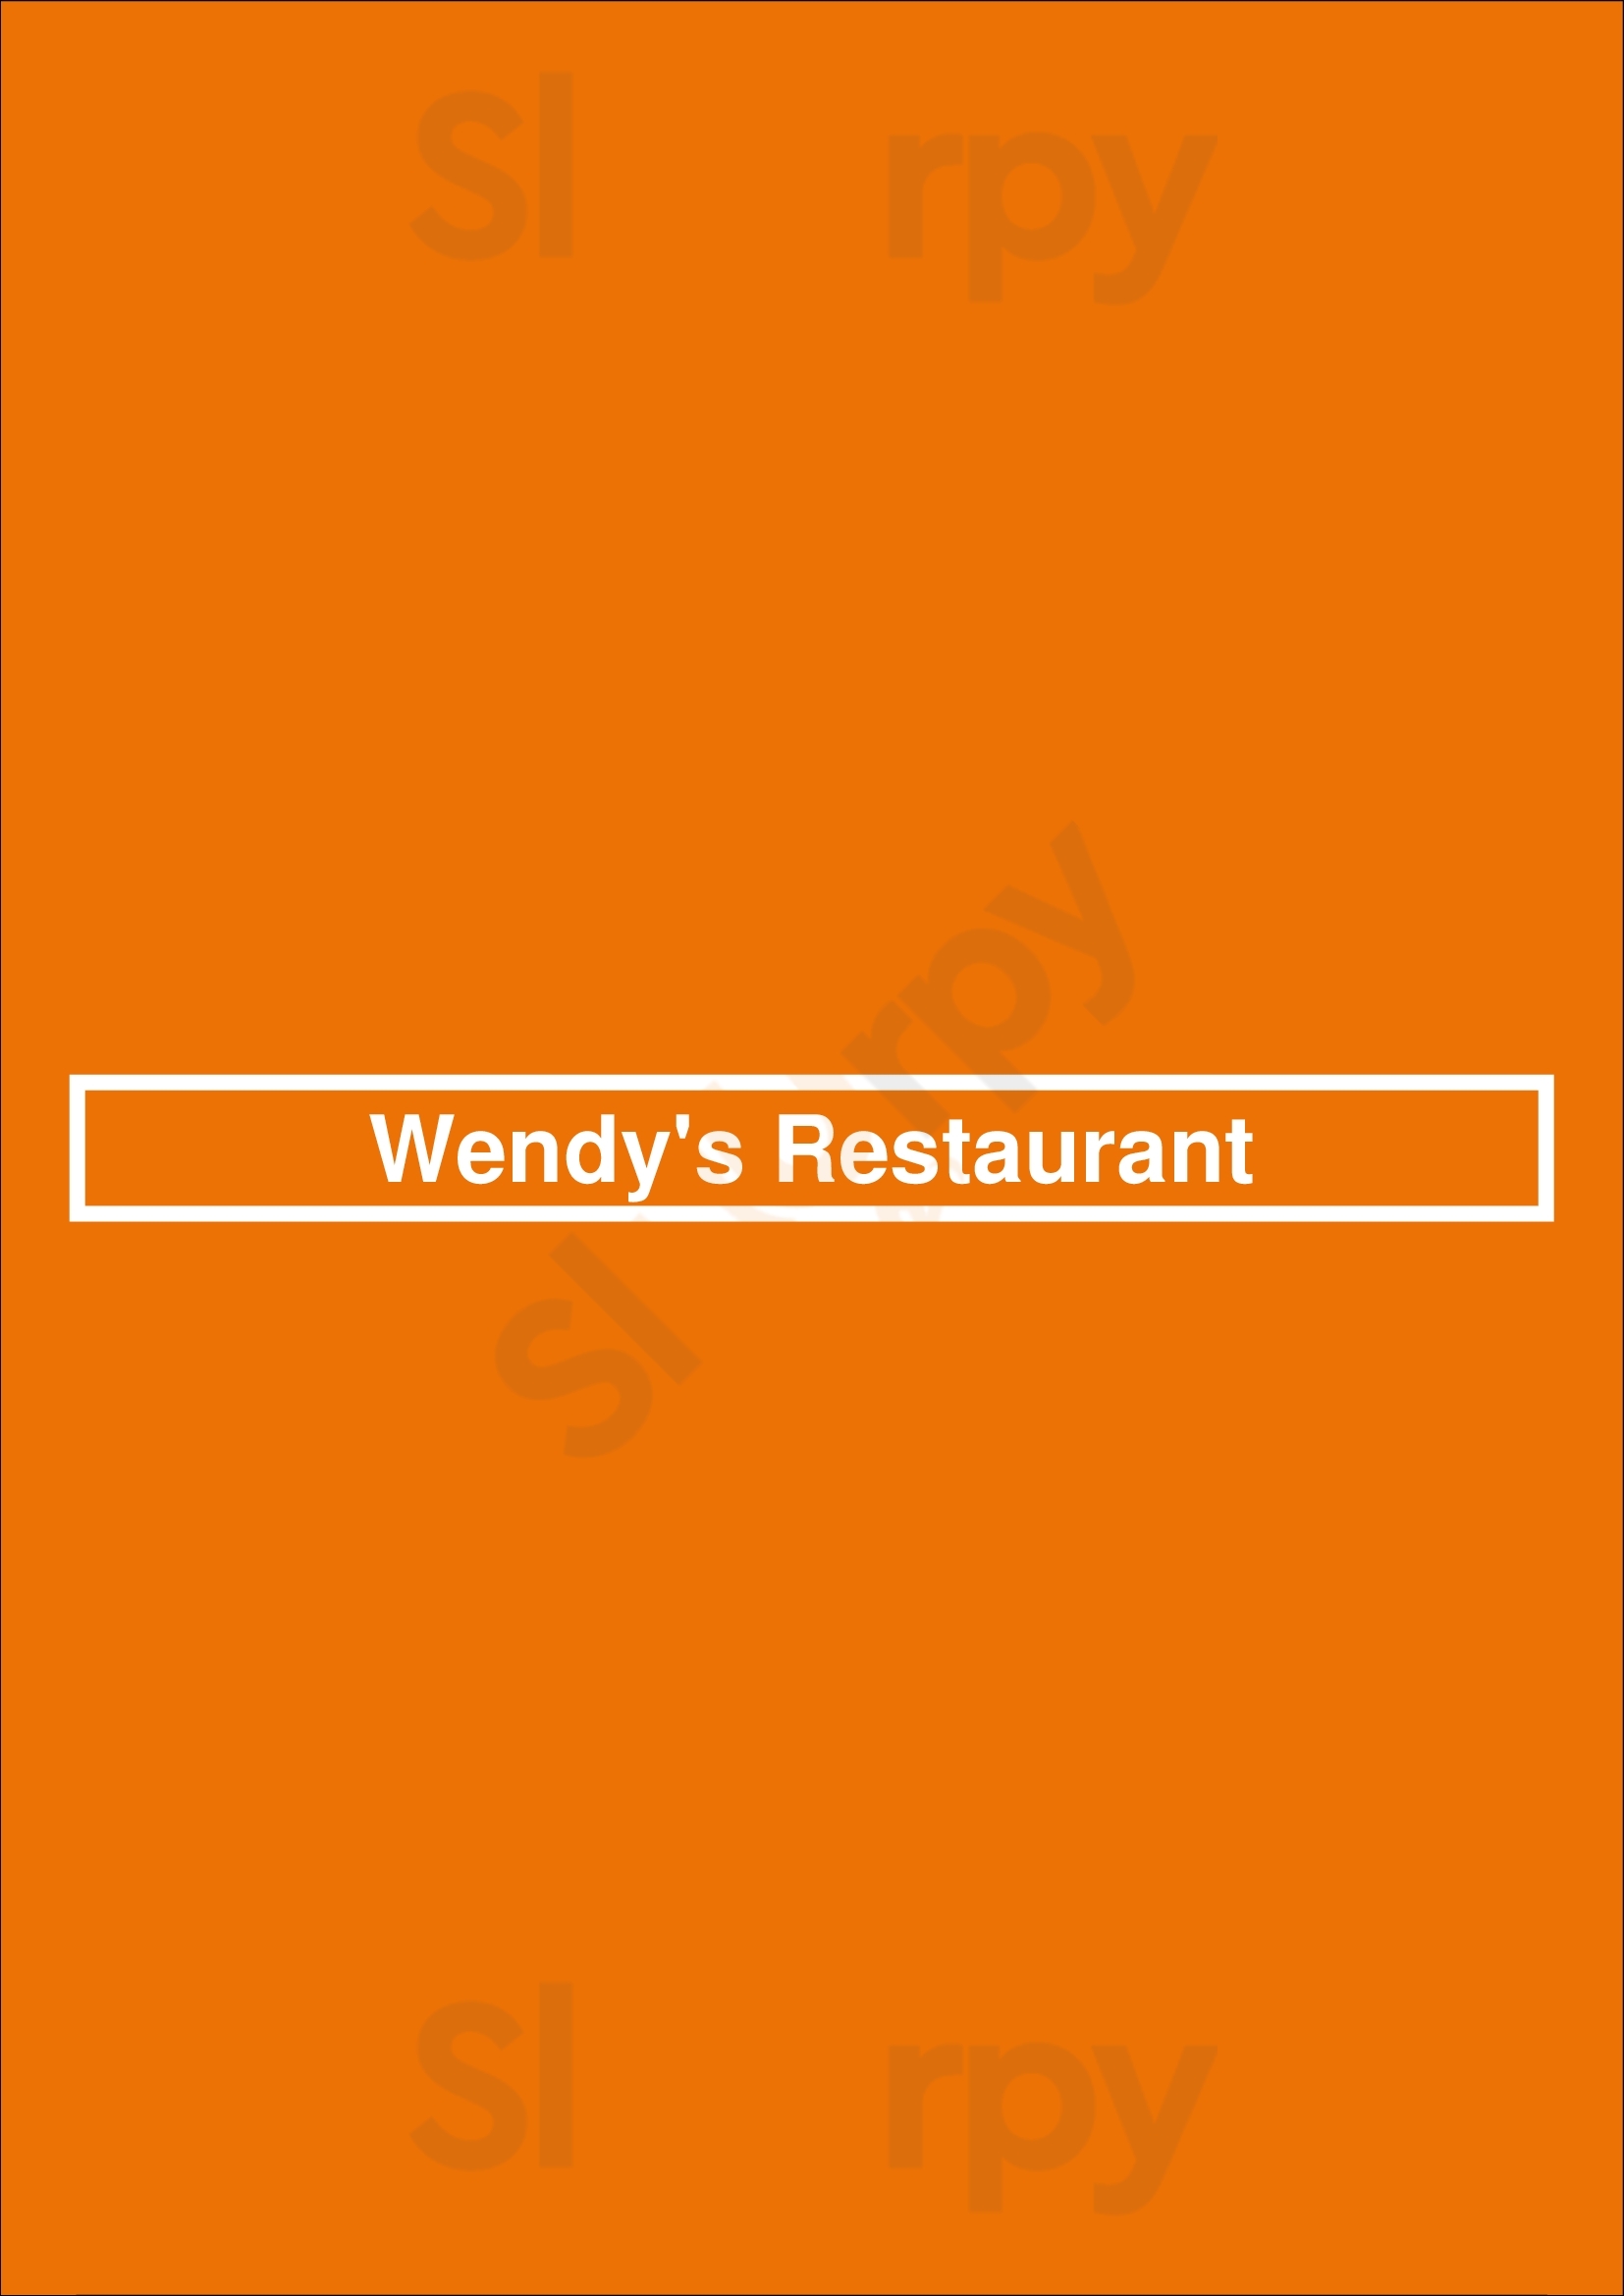 Wendy's Restaurant Lansing Menu - 1